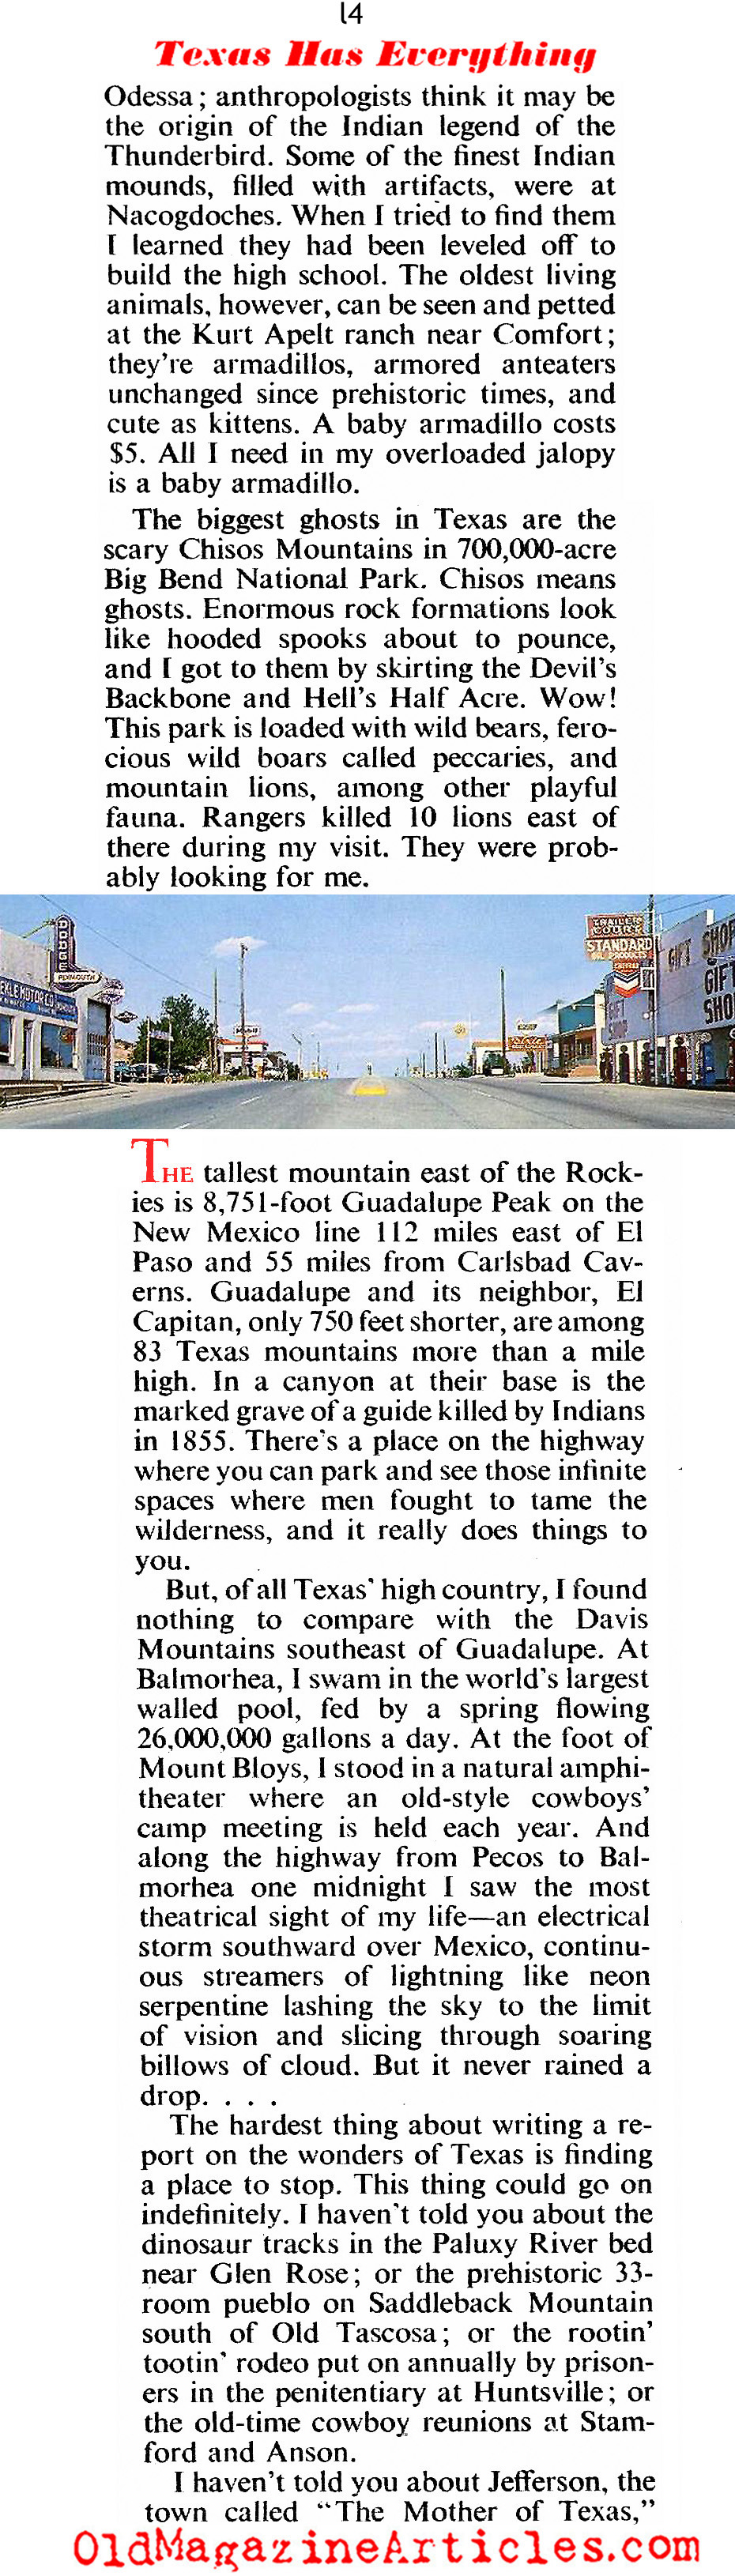 1950s Texas (American Magazine, 1952)